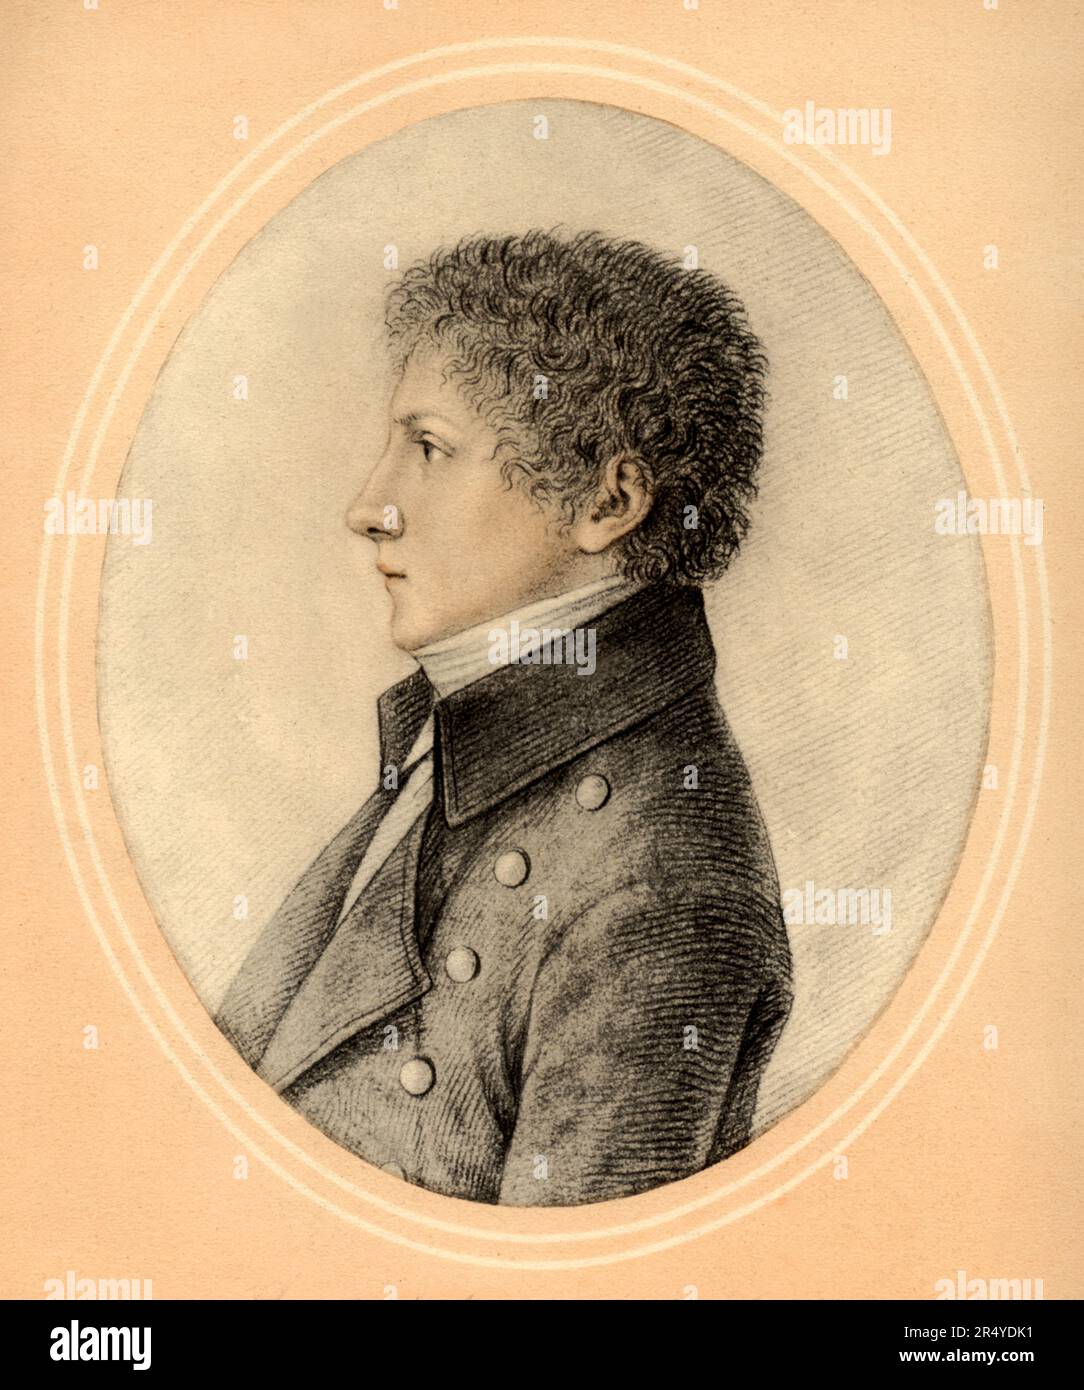 1802 , Mailand , ITALIEN : der gefeierte italienische Schriftsteller und Dichter ALESSANDRO MANZONI ( 1785 - 1873 ) im Alter von 17 Jahren . Porträt des Malers GAUDENZIO BORDIGA ( 1773 - 1837 ) . POETA - POET - POESIA - POESIE - POESIE - SCRITTORE - LETTERATO - LITERATUR - LETTERATURA - RITUTO - PROFILO - PROFIL - ARCHIVIO GBB Stockfoto